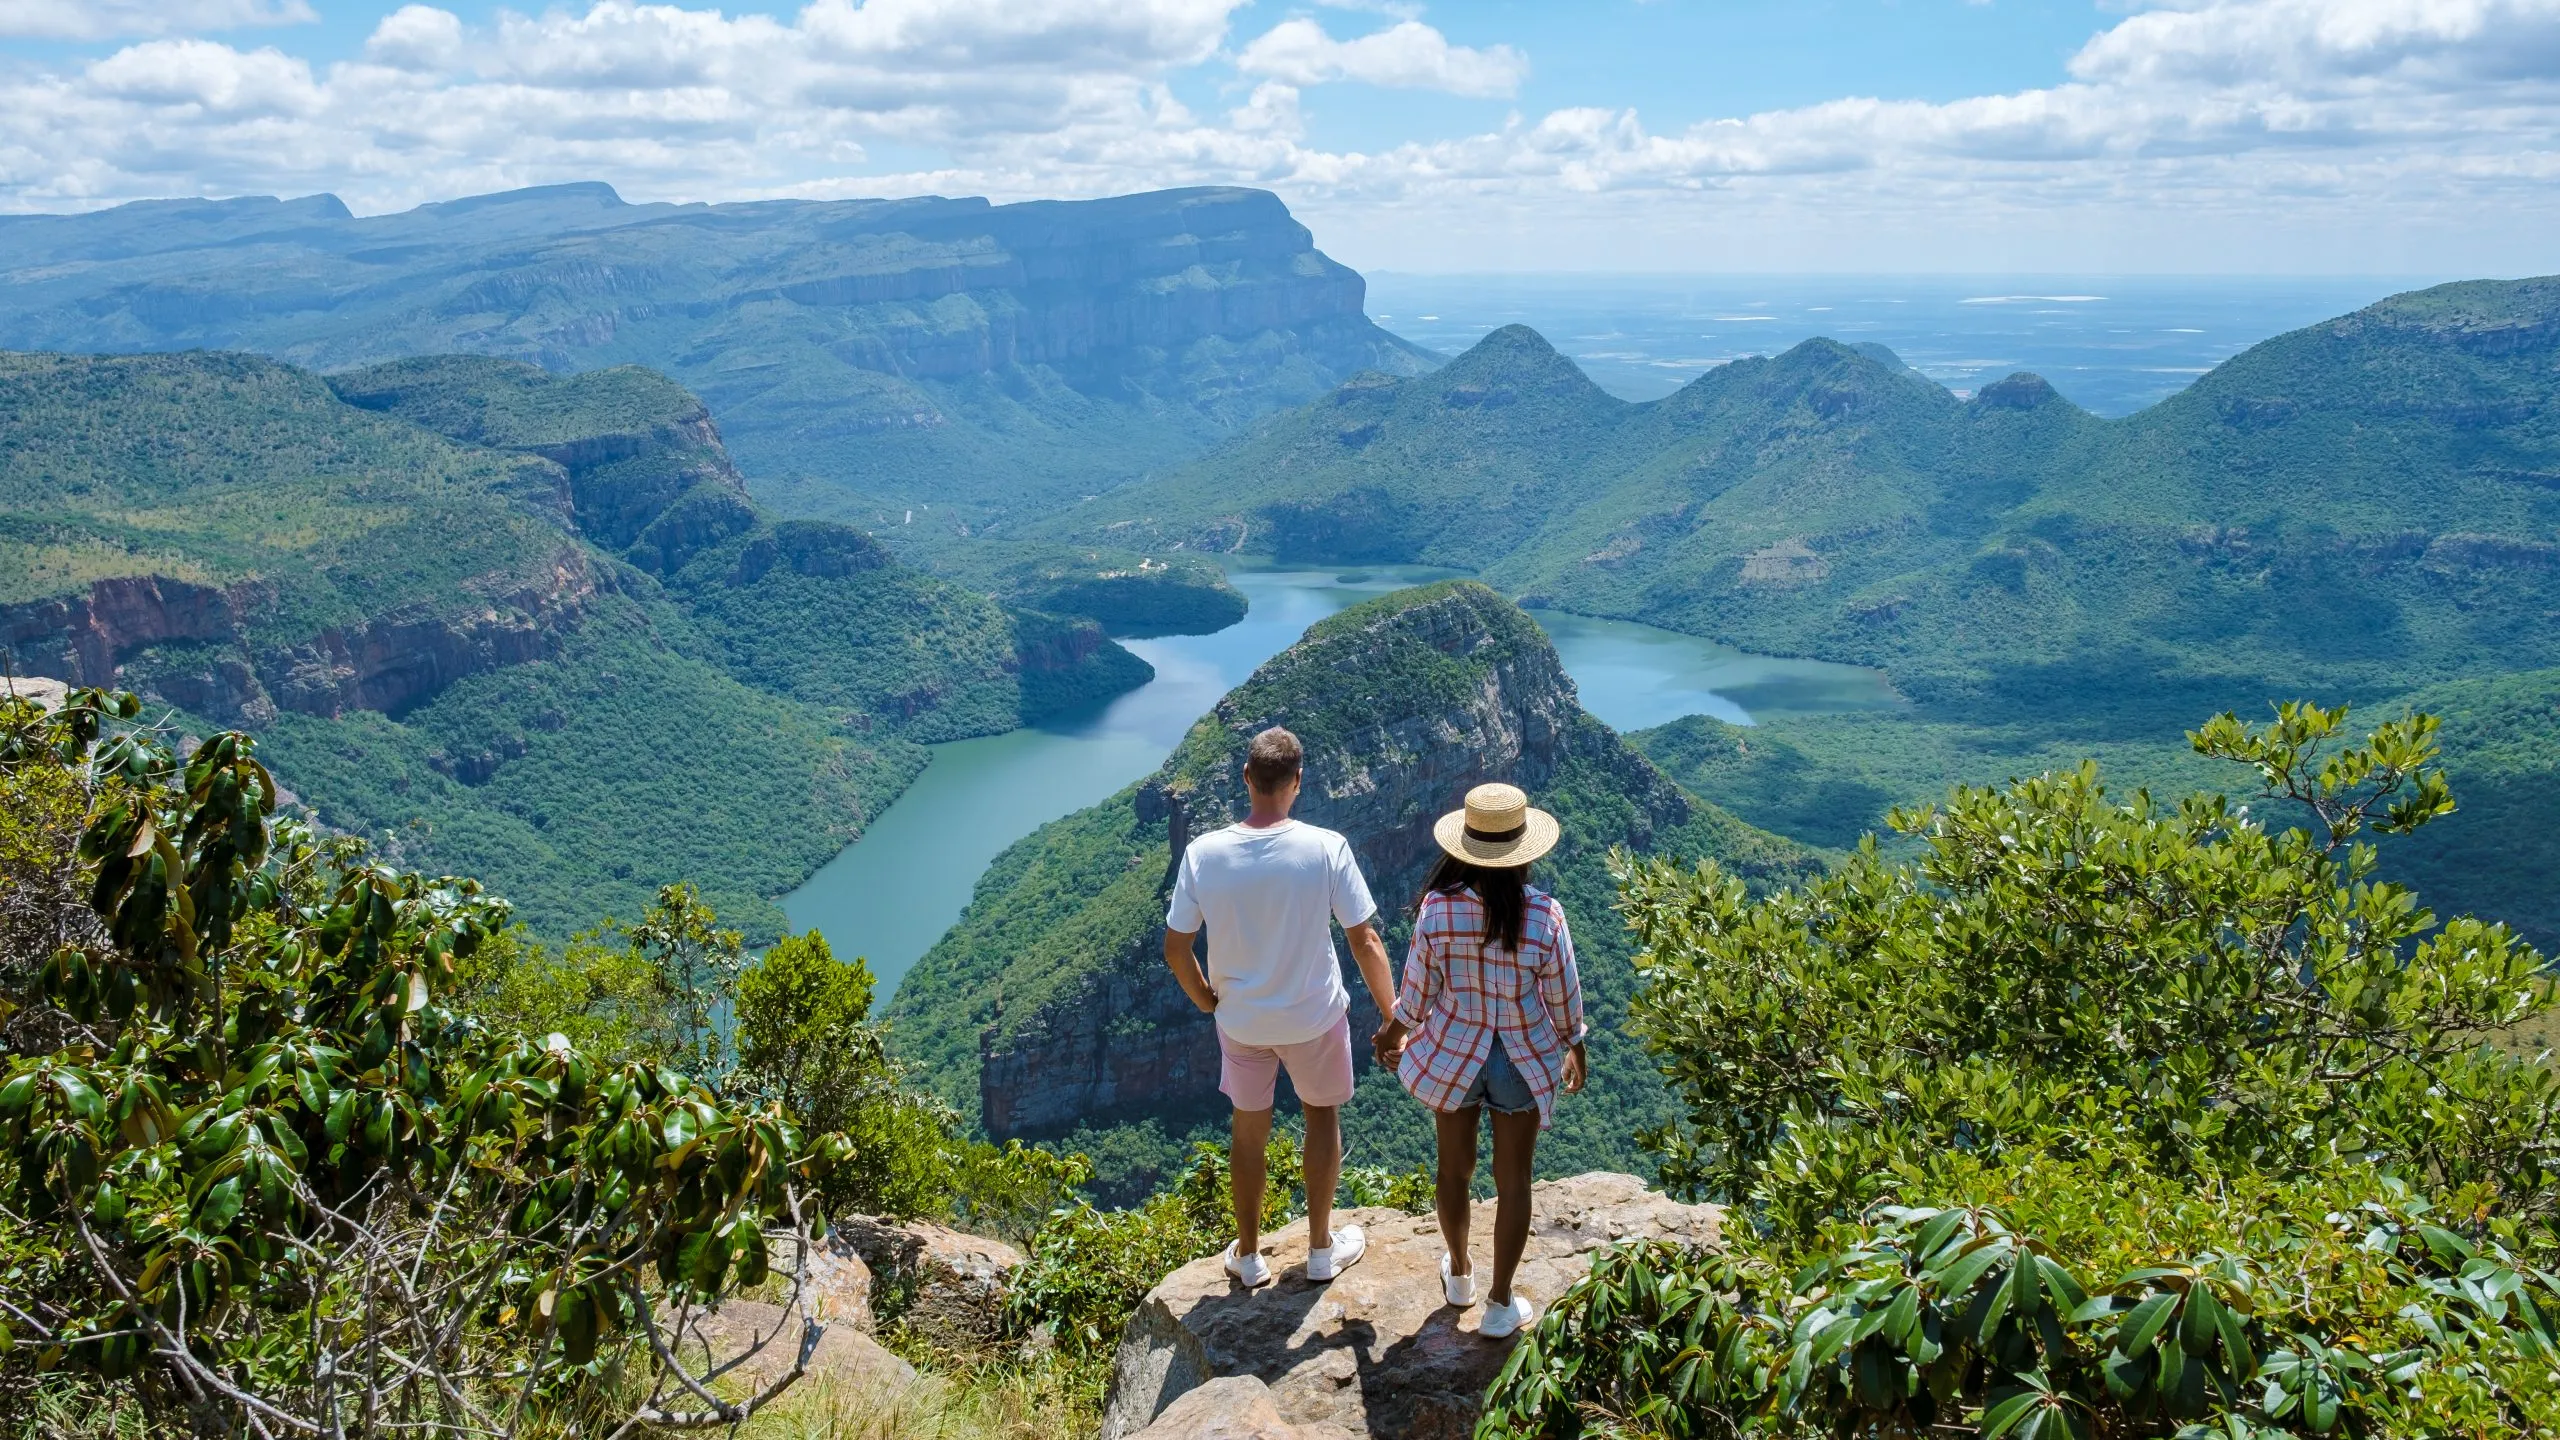 Panorama Route Sudafrica, canyon del fiume Blyde con le tre rondavels, vista di tre rondavels e del canyon del fiume Blyde in Sudafrica. Donne asiatiche e uomini caucasici in vacanza in Sudafrica